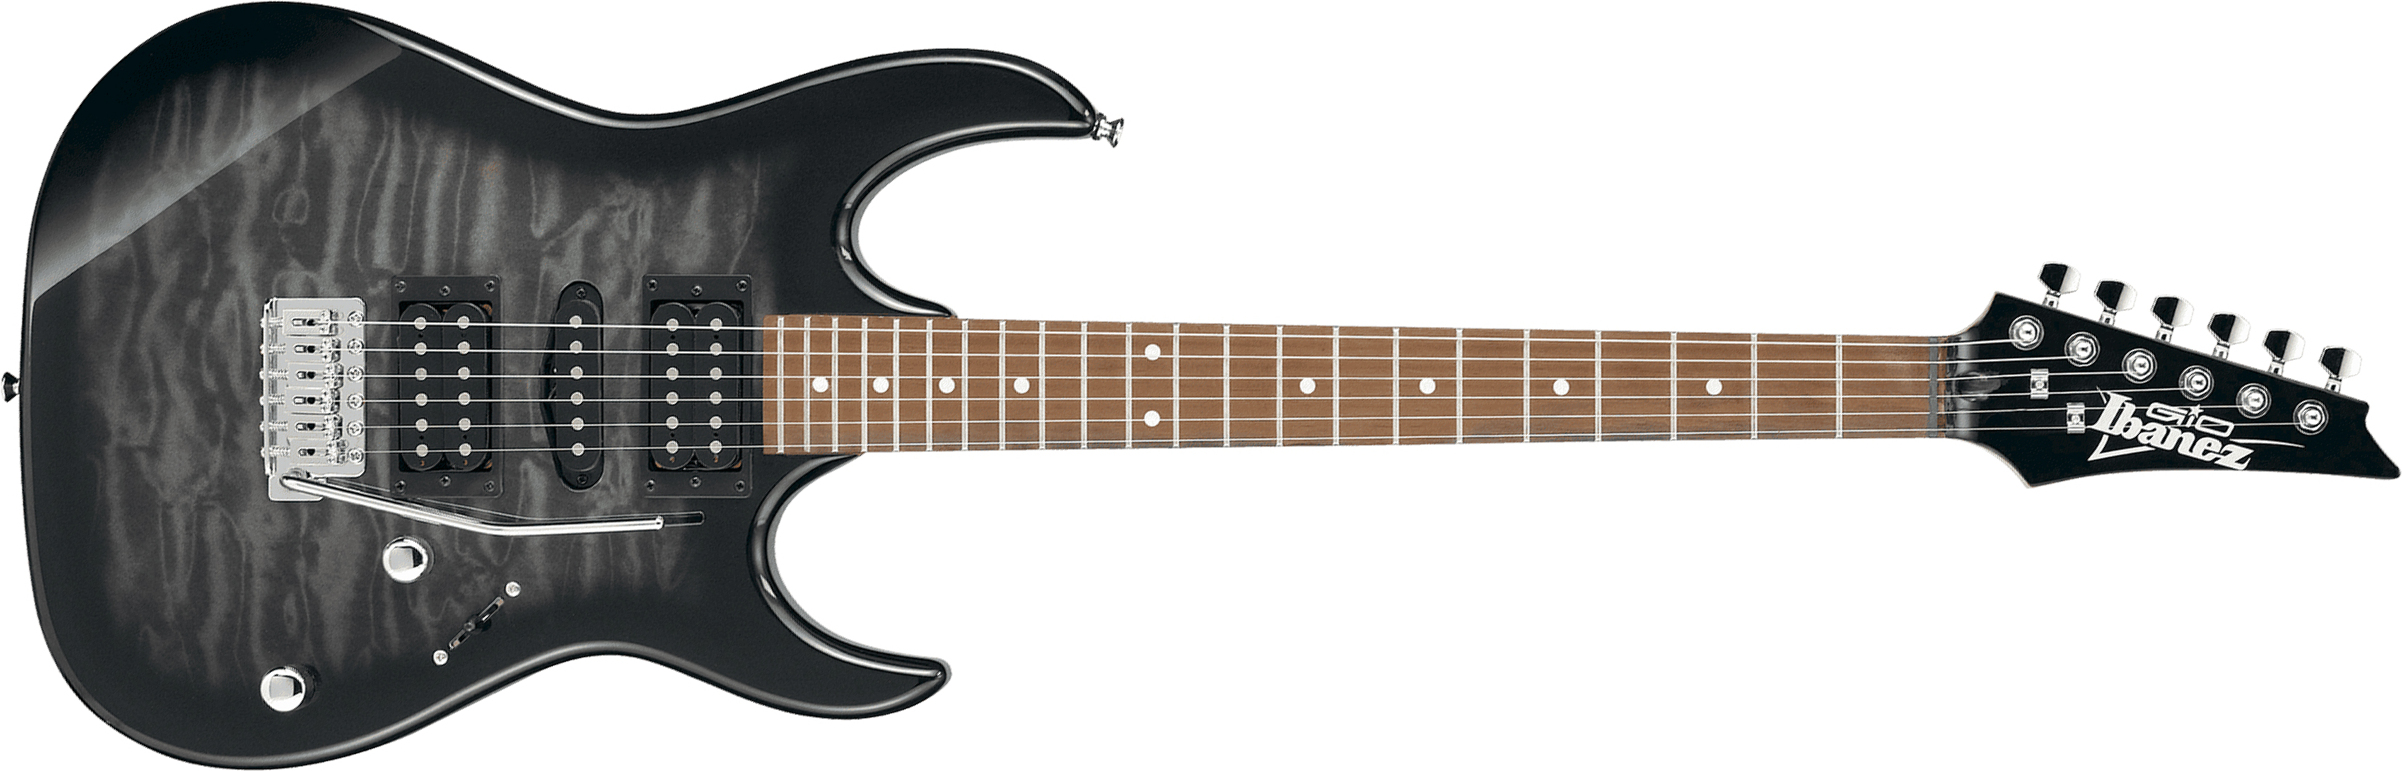 Ibanez Grx70qa Tks Gio Hsh Trem Nzp - Transparent Black Sunburst - Elektrische gitaar in Str-vorm - Main picture